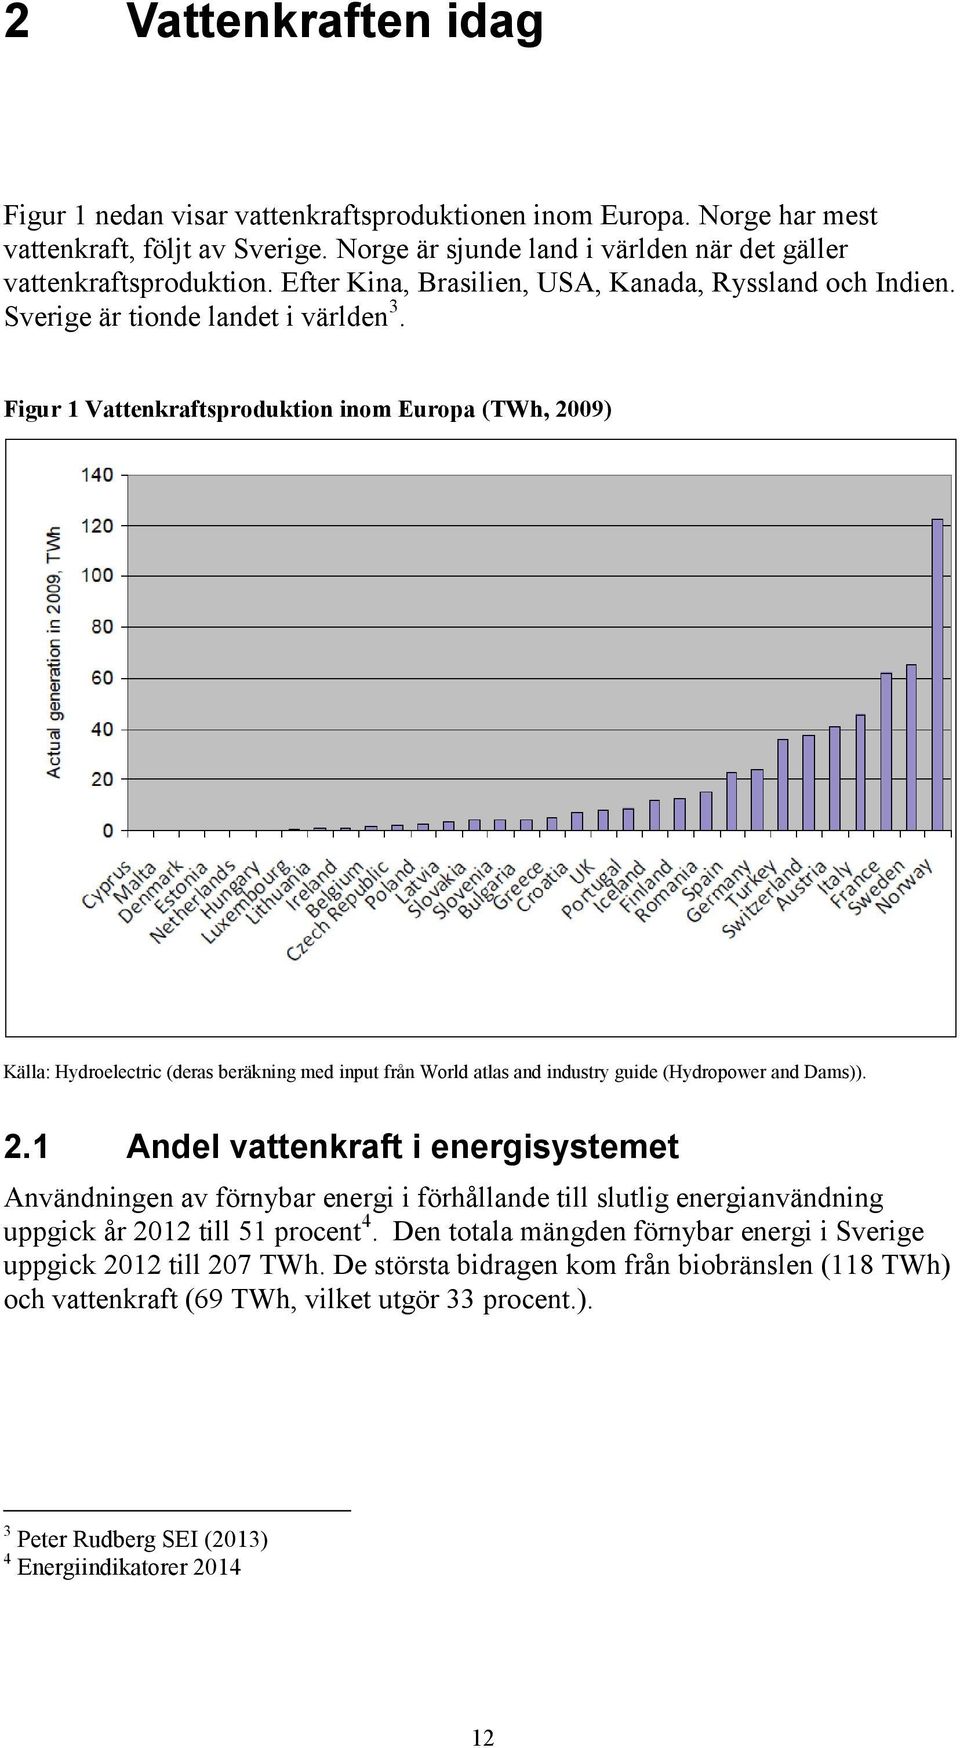 Figur 1 Vattenkraftsproduktion inom Europa (TWh, 2009) Källa: Hydroelectric (deras beräkning med input från World atlas and industry guide (Hydropower and Dams)). 2.1 Andel vattenkraft i energisystemet Användningen av förnybar energi i förhållande till slutlig energianvändning uppgick år 2012 till 51 procent 4.